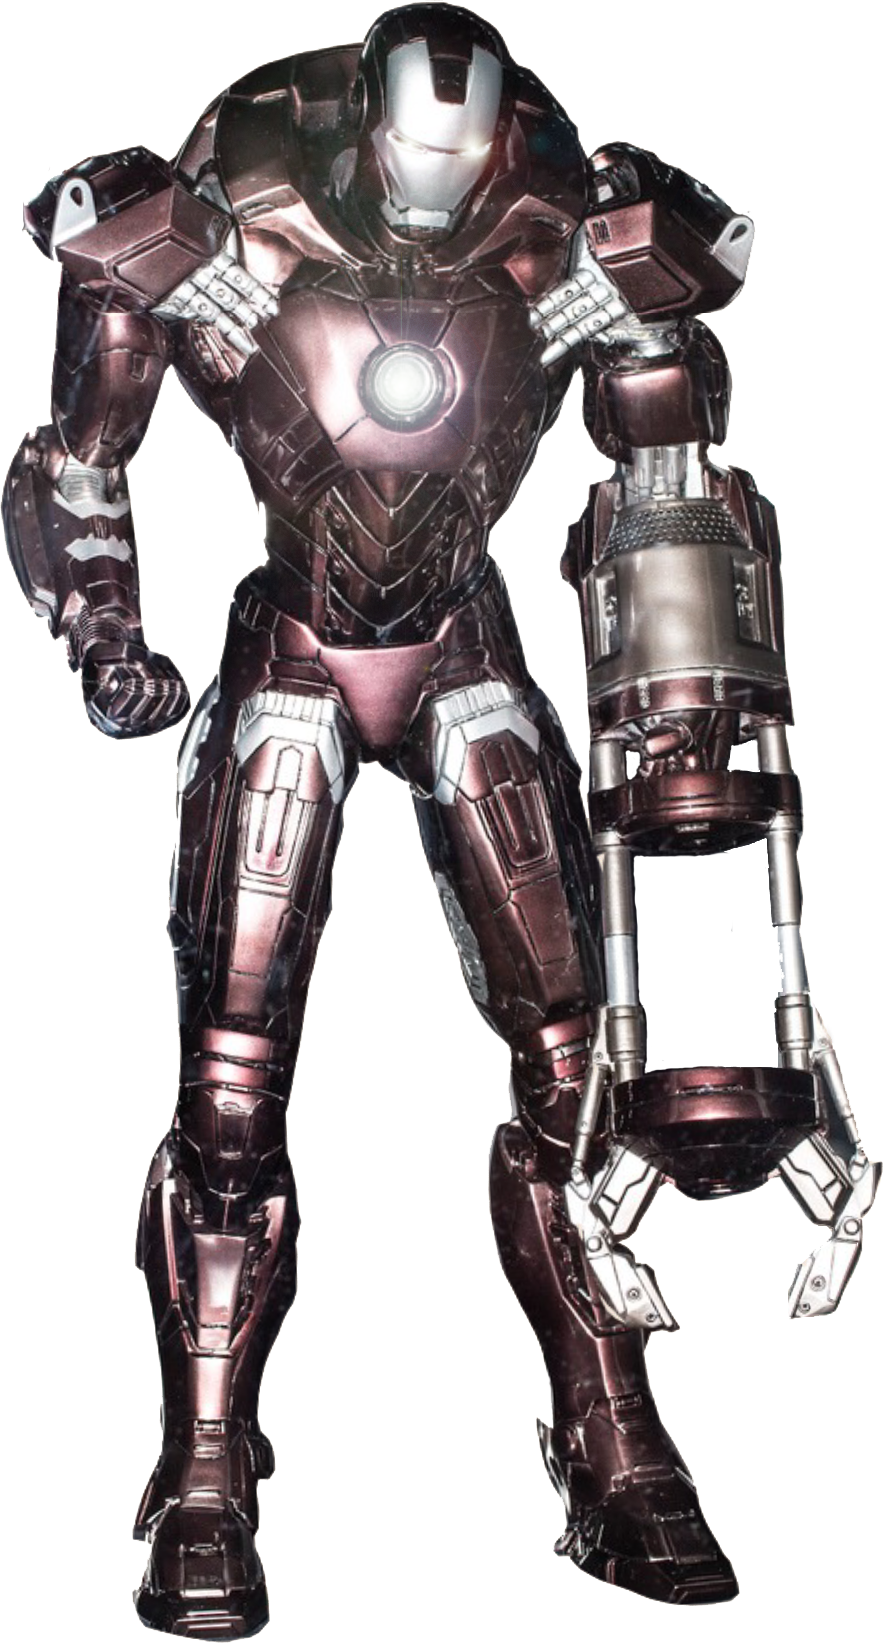 Iron Man Armor Standing Pose